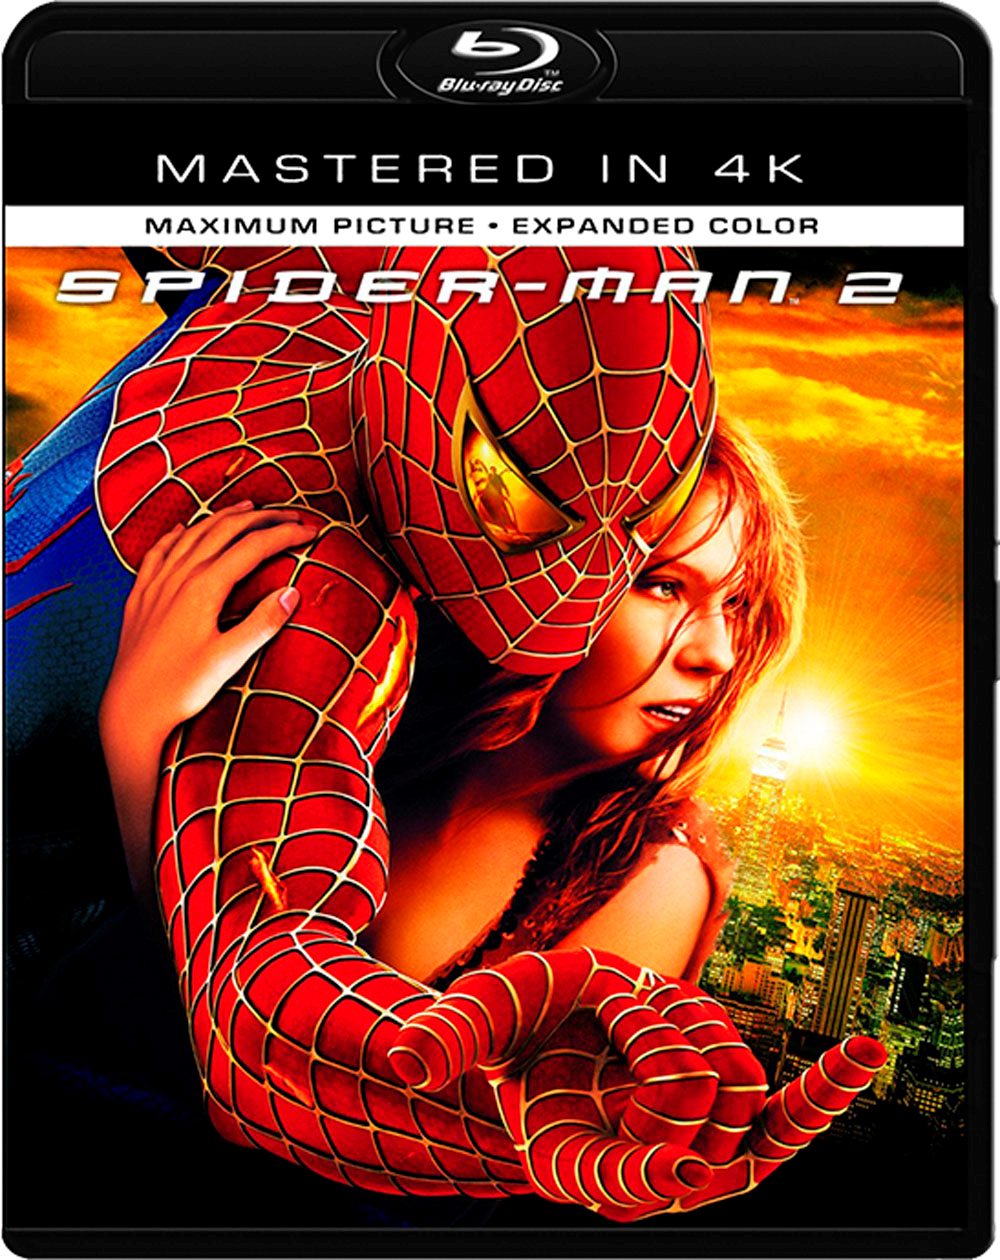 |倒序浏览 |阅读模式 [蜘蛛侠1].Spider-Man.2002.EUR.UHD.BluRay.2160p.HEVC.TrueHD.7.1-NIMA4K   55.86G-1.jpg